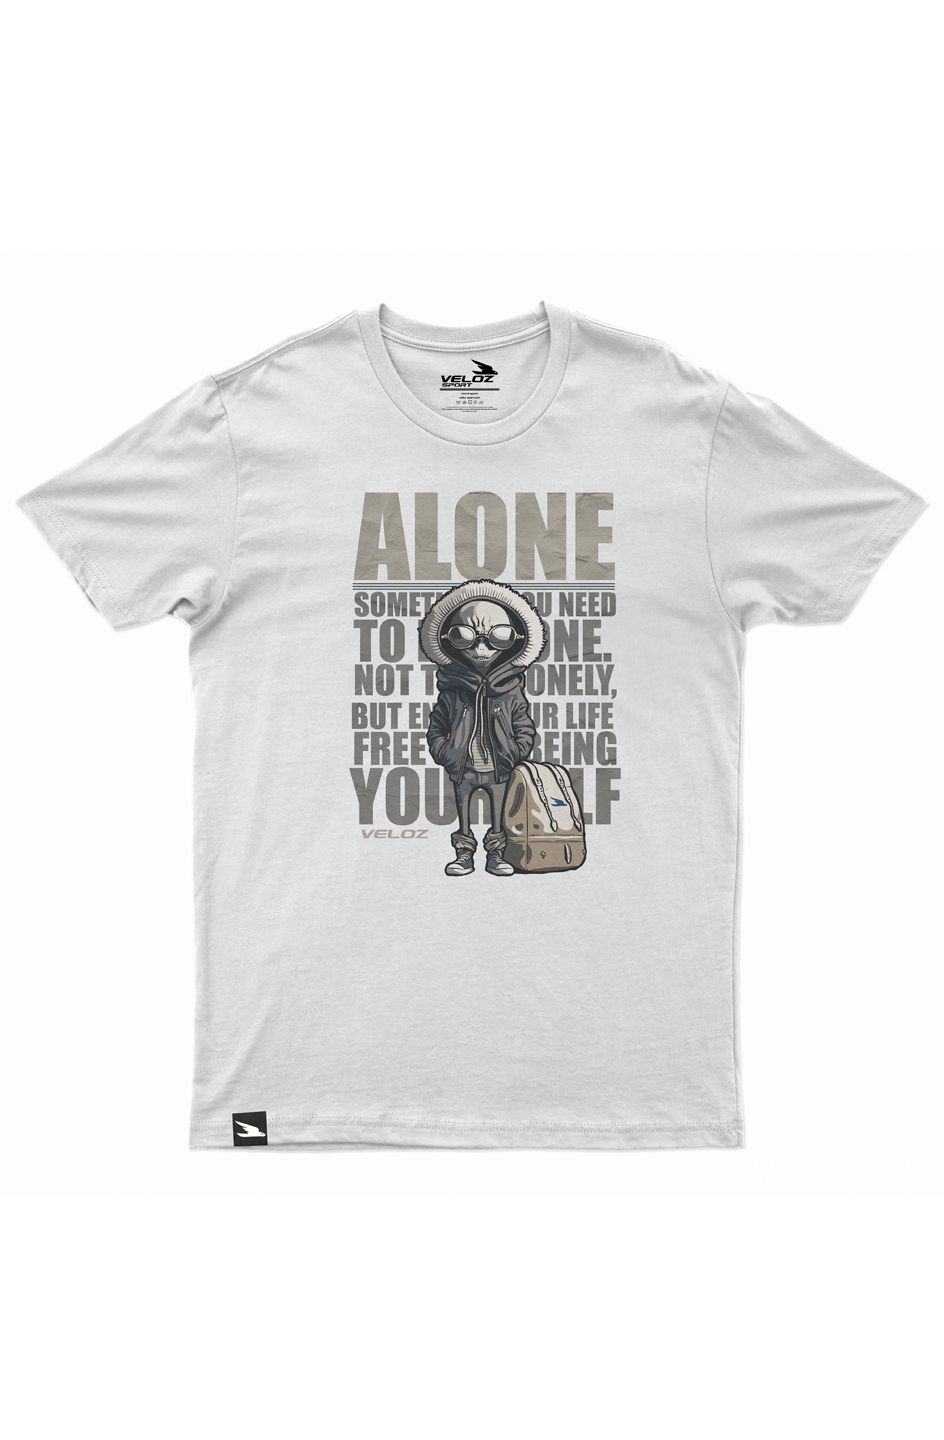 Alone T-Shirt